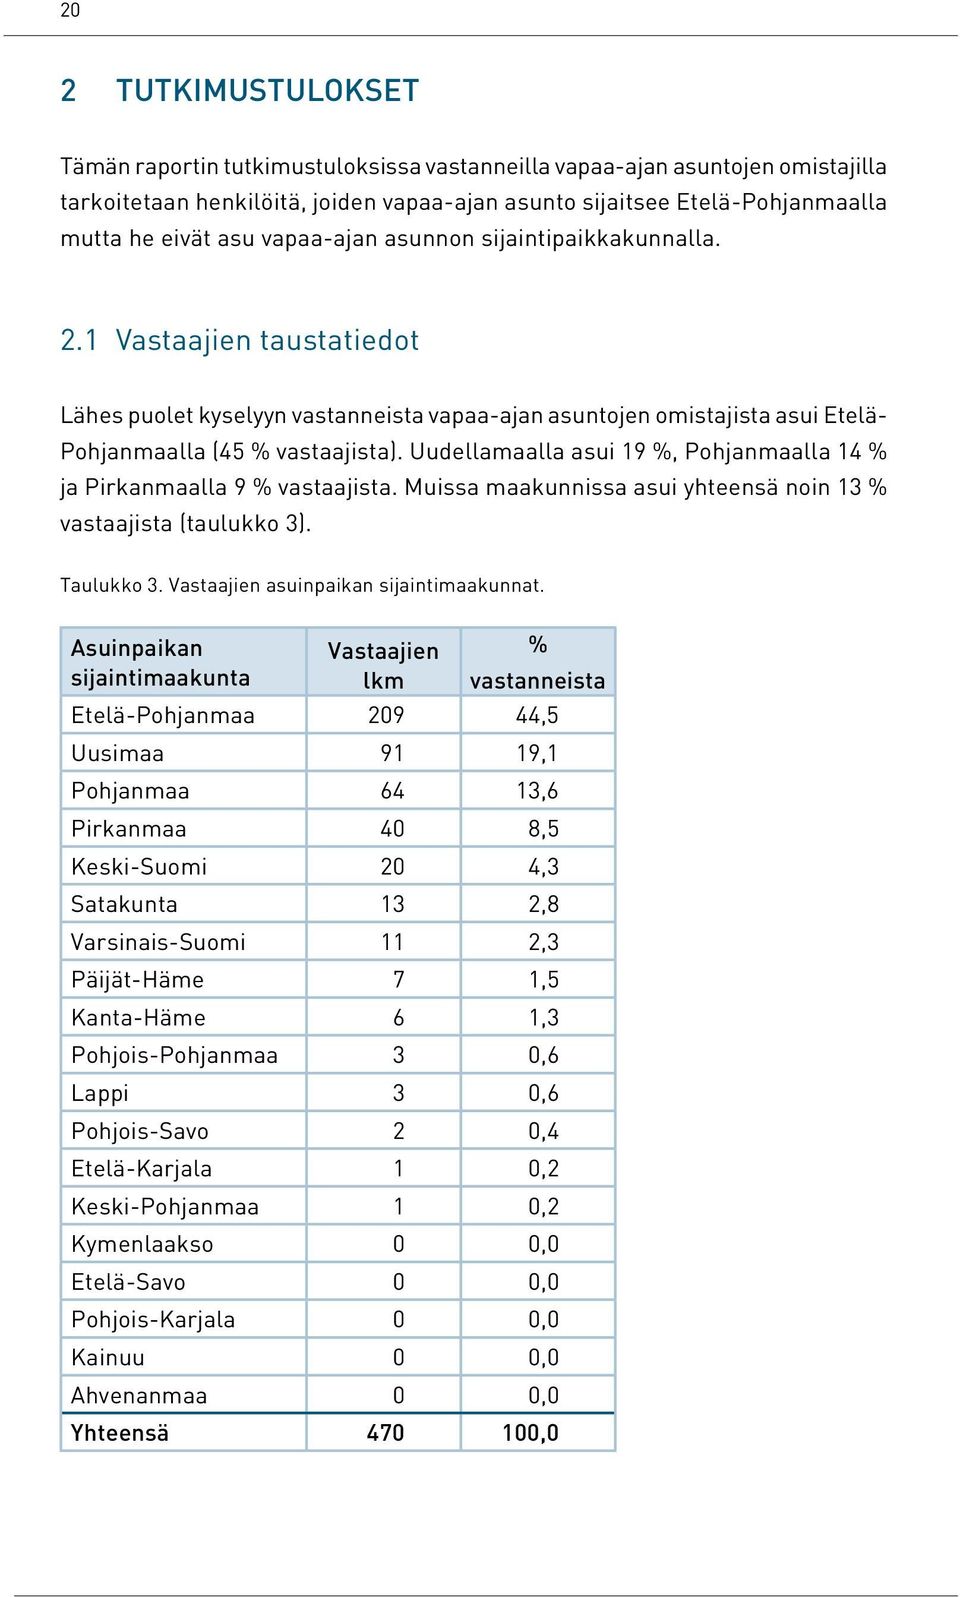 Uudellamaalla asui 19 %, Pohjanmaalla 14 % ja Pirkanmaalla 9 % vastaajista. Muissa maakunnissa asui yhteensä noin 13 % vastaajista (taulukko 3). Taulukko 3. Vastaajien asuinpaikan sijaintimaakunnat.